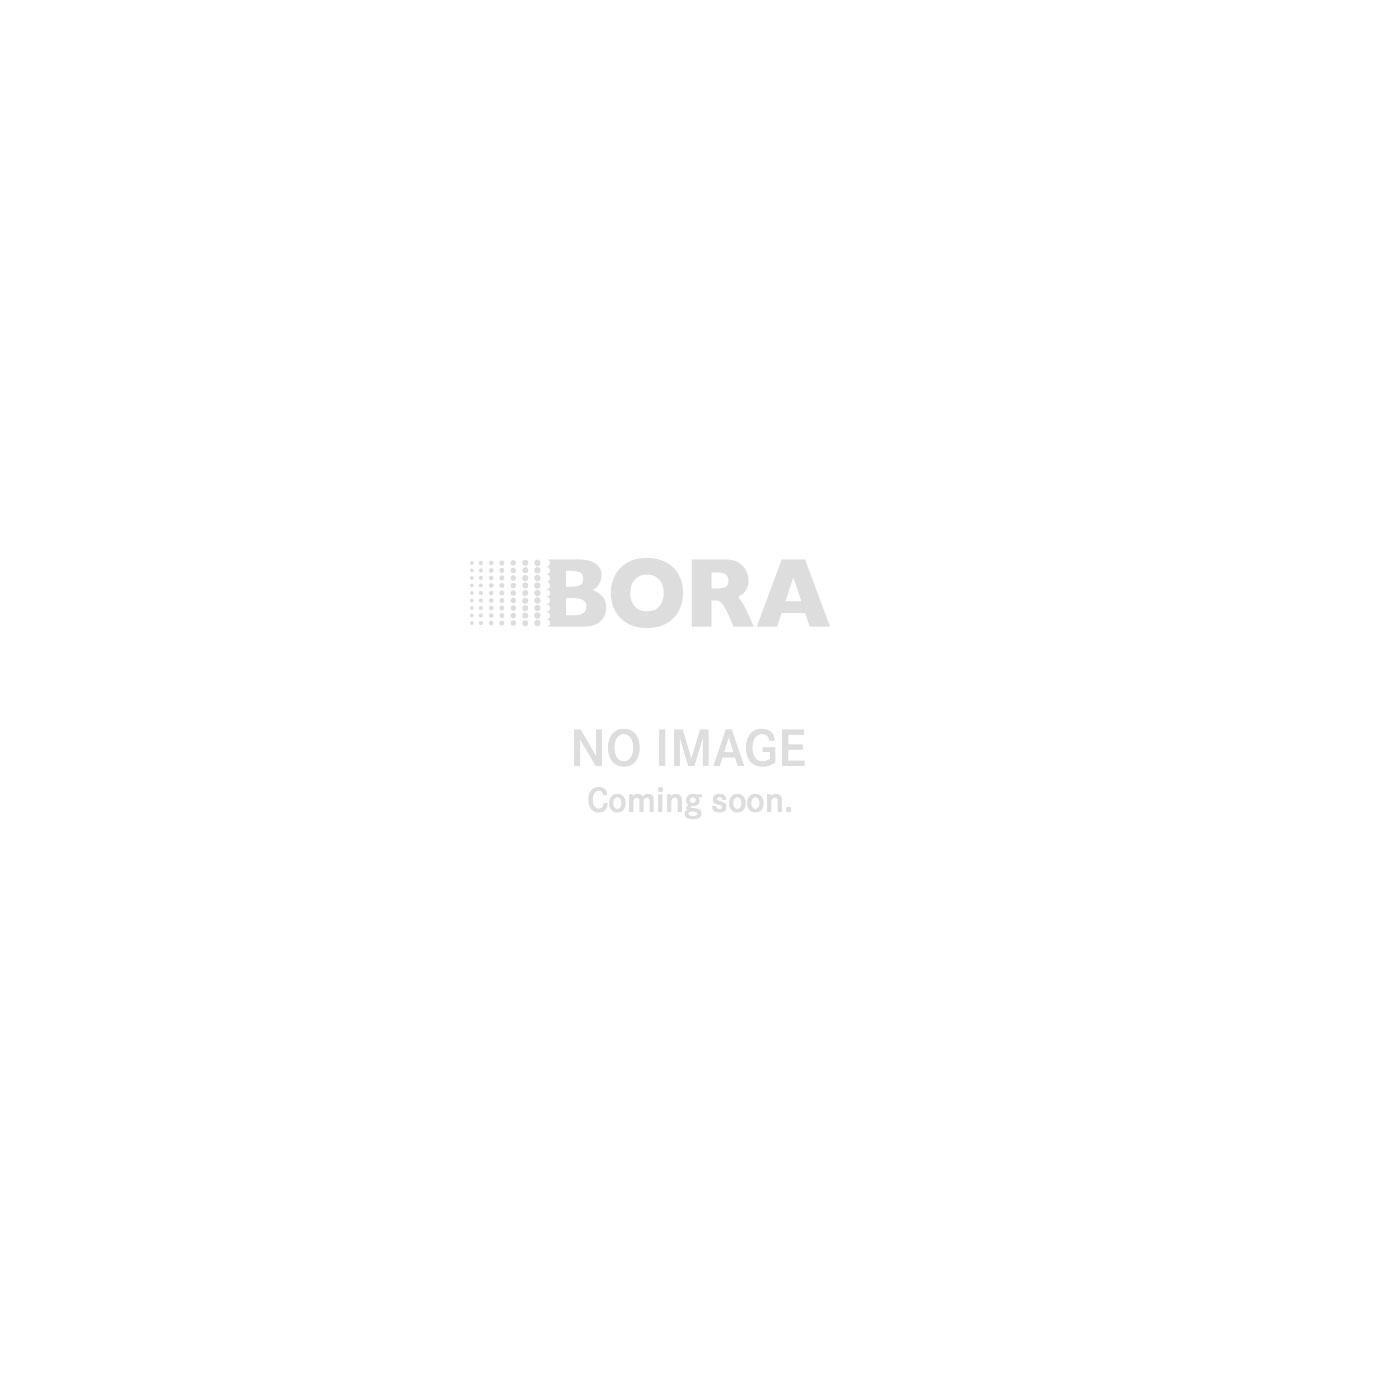 Neue Auszeichnung für BORA Basic: Interior Innovation Award – Winner 2015 